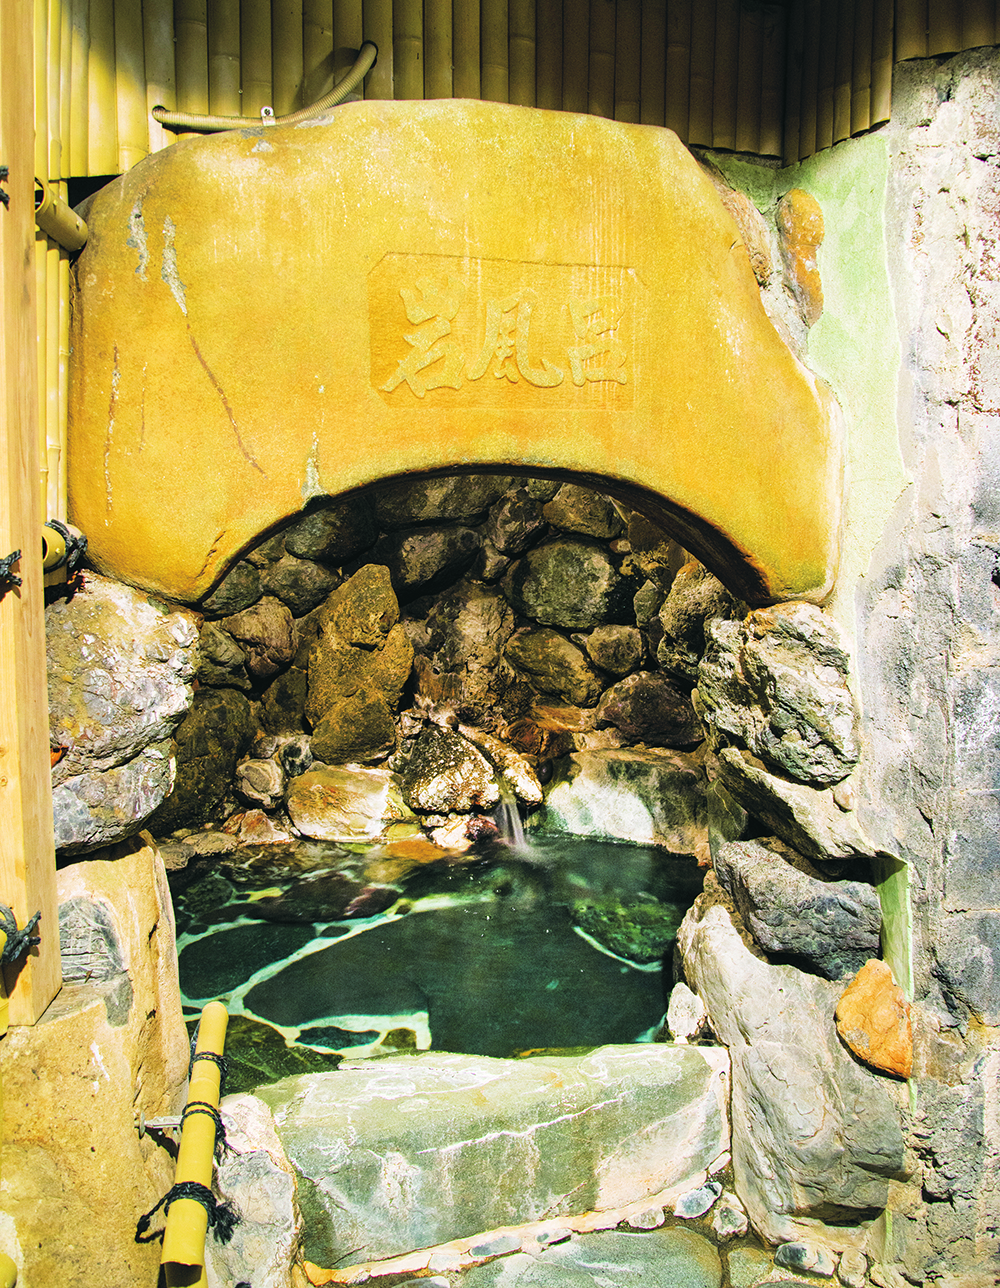 岩で作られた洞窟風呂の「山の湯」は半露天。